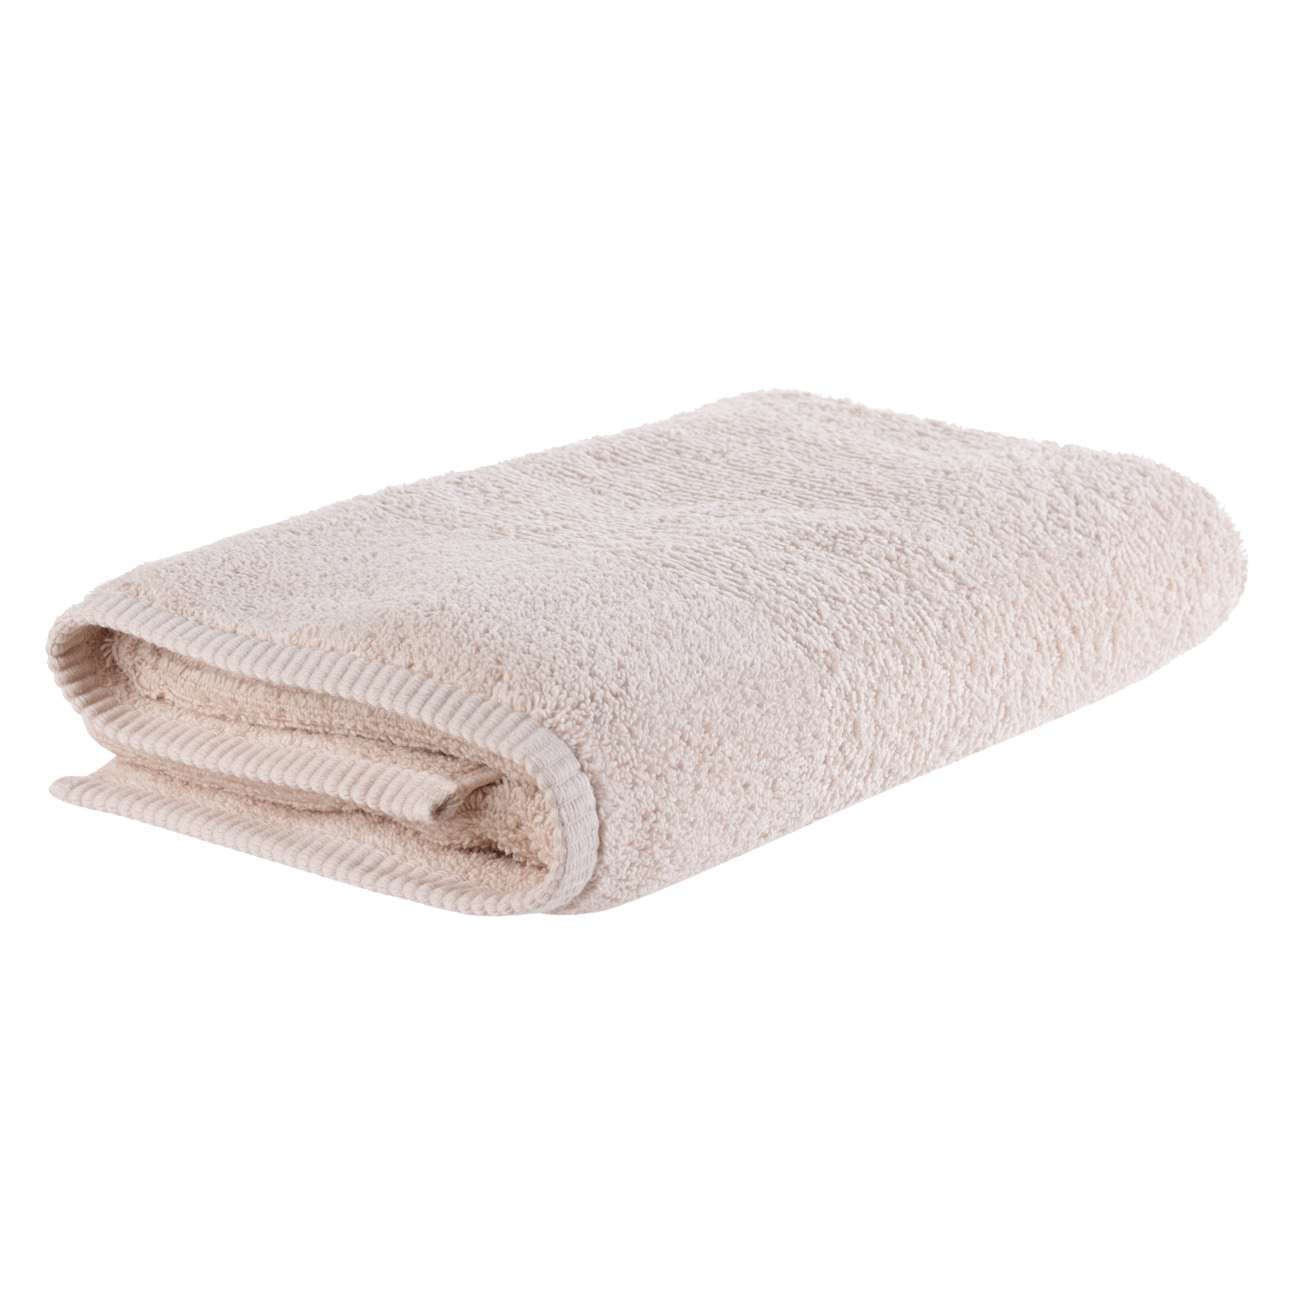 Towel, 70x140 cm, cotton, beige, Terry cotton изображение № 3